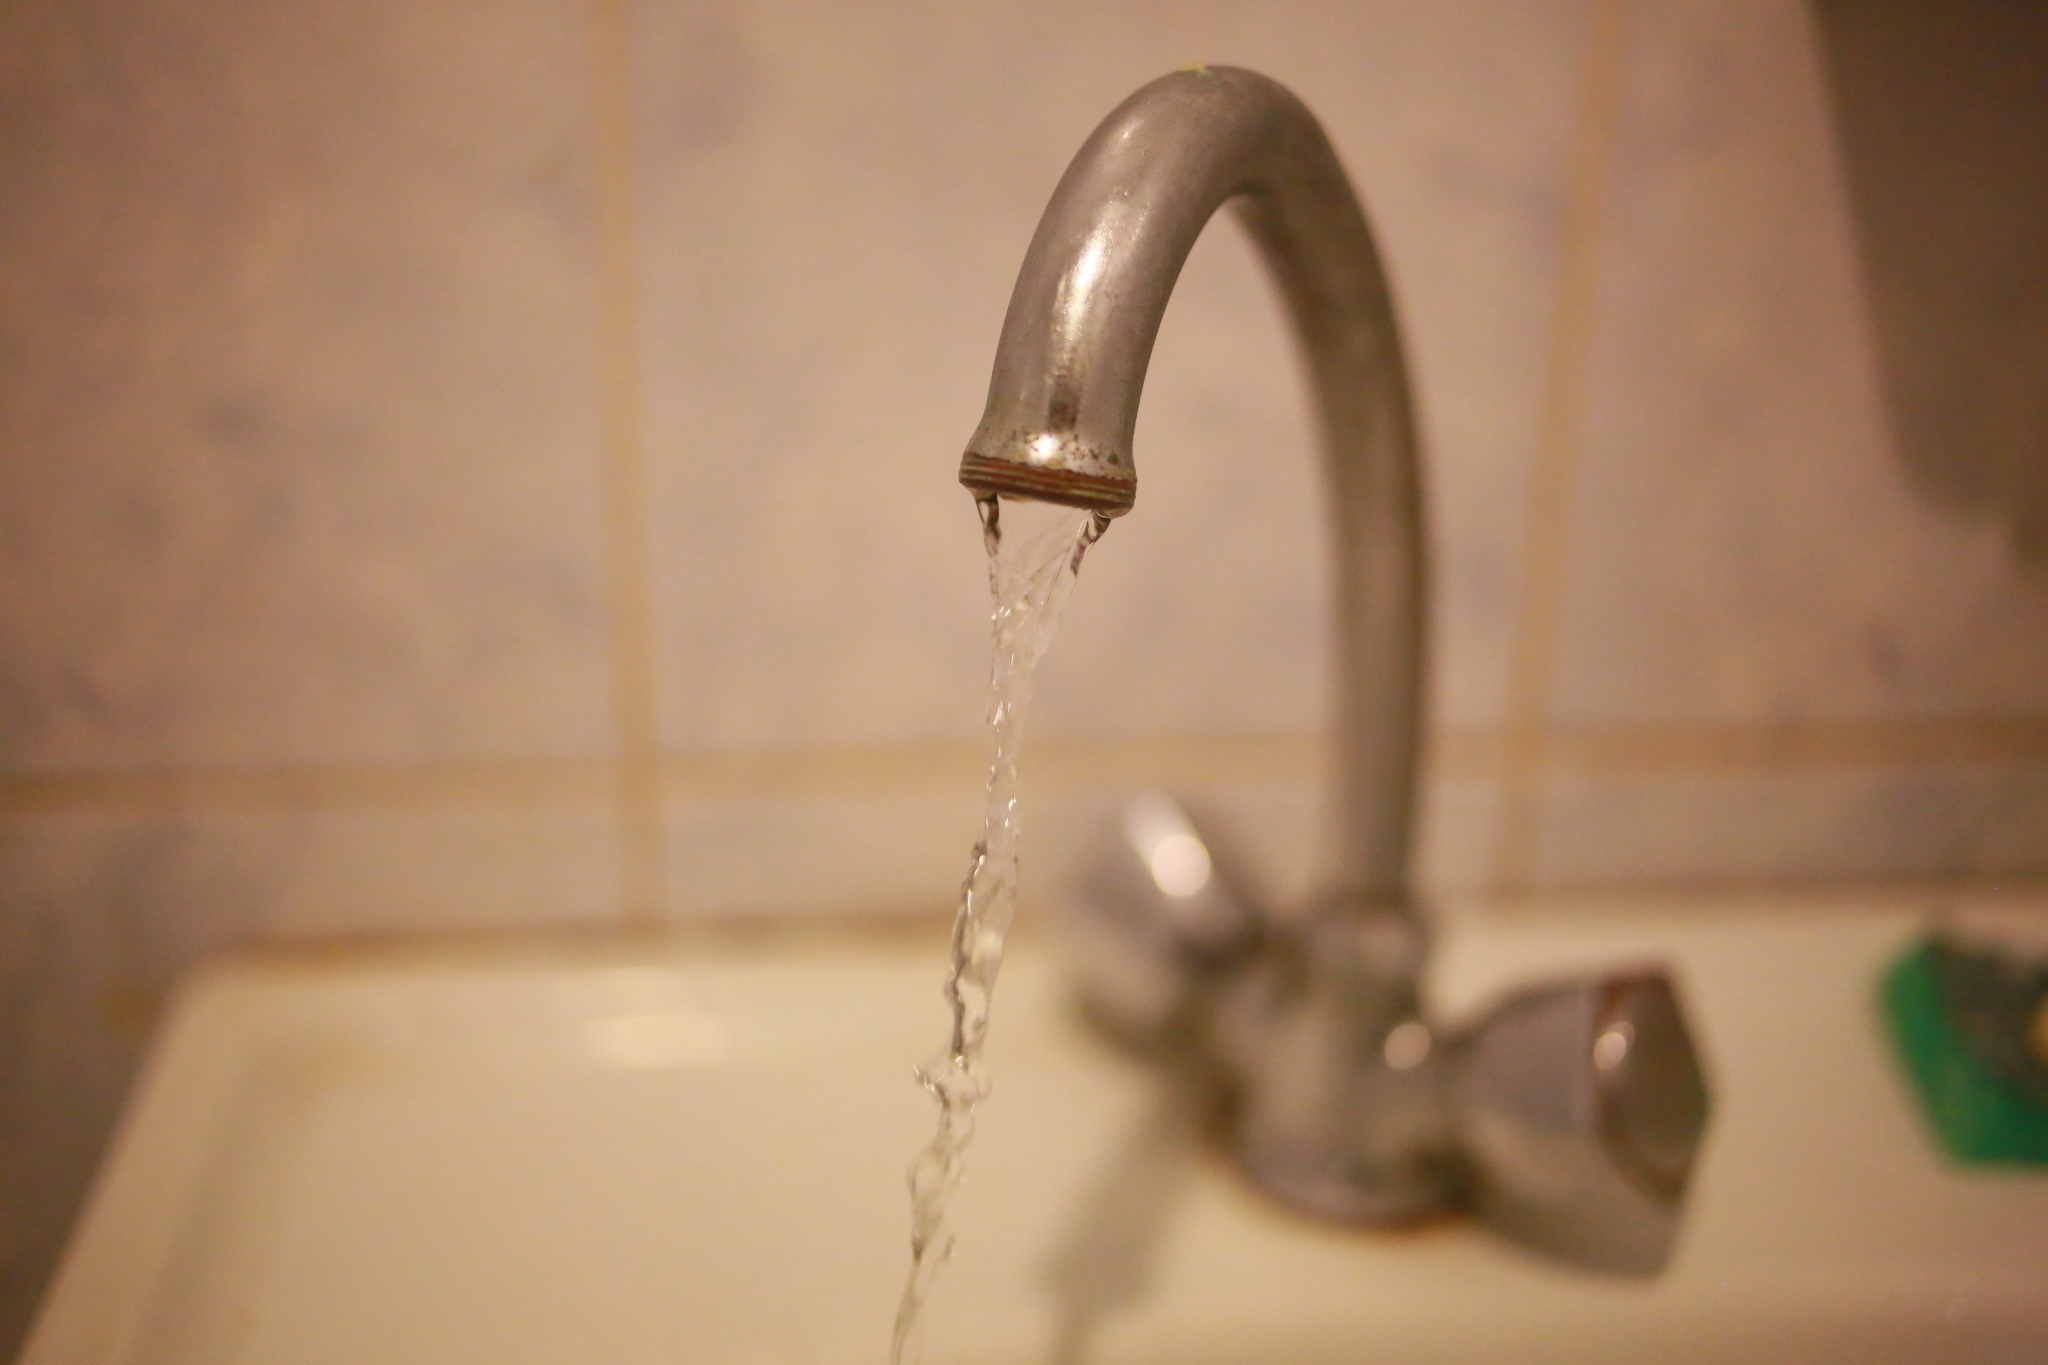 Опубликован первый список домов в Кирове, где отключат горячую воду в мае